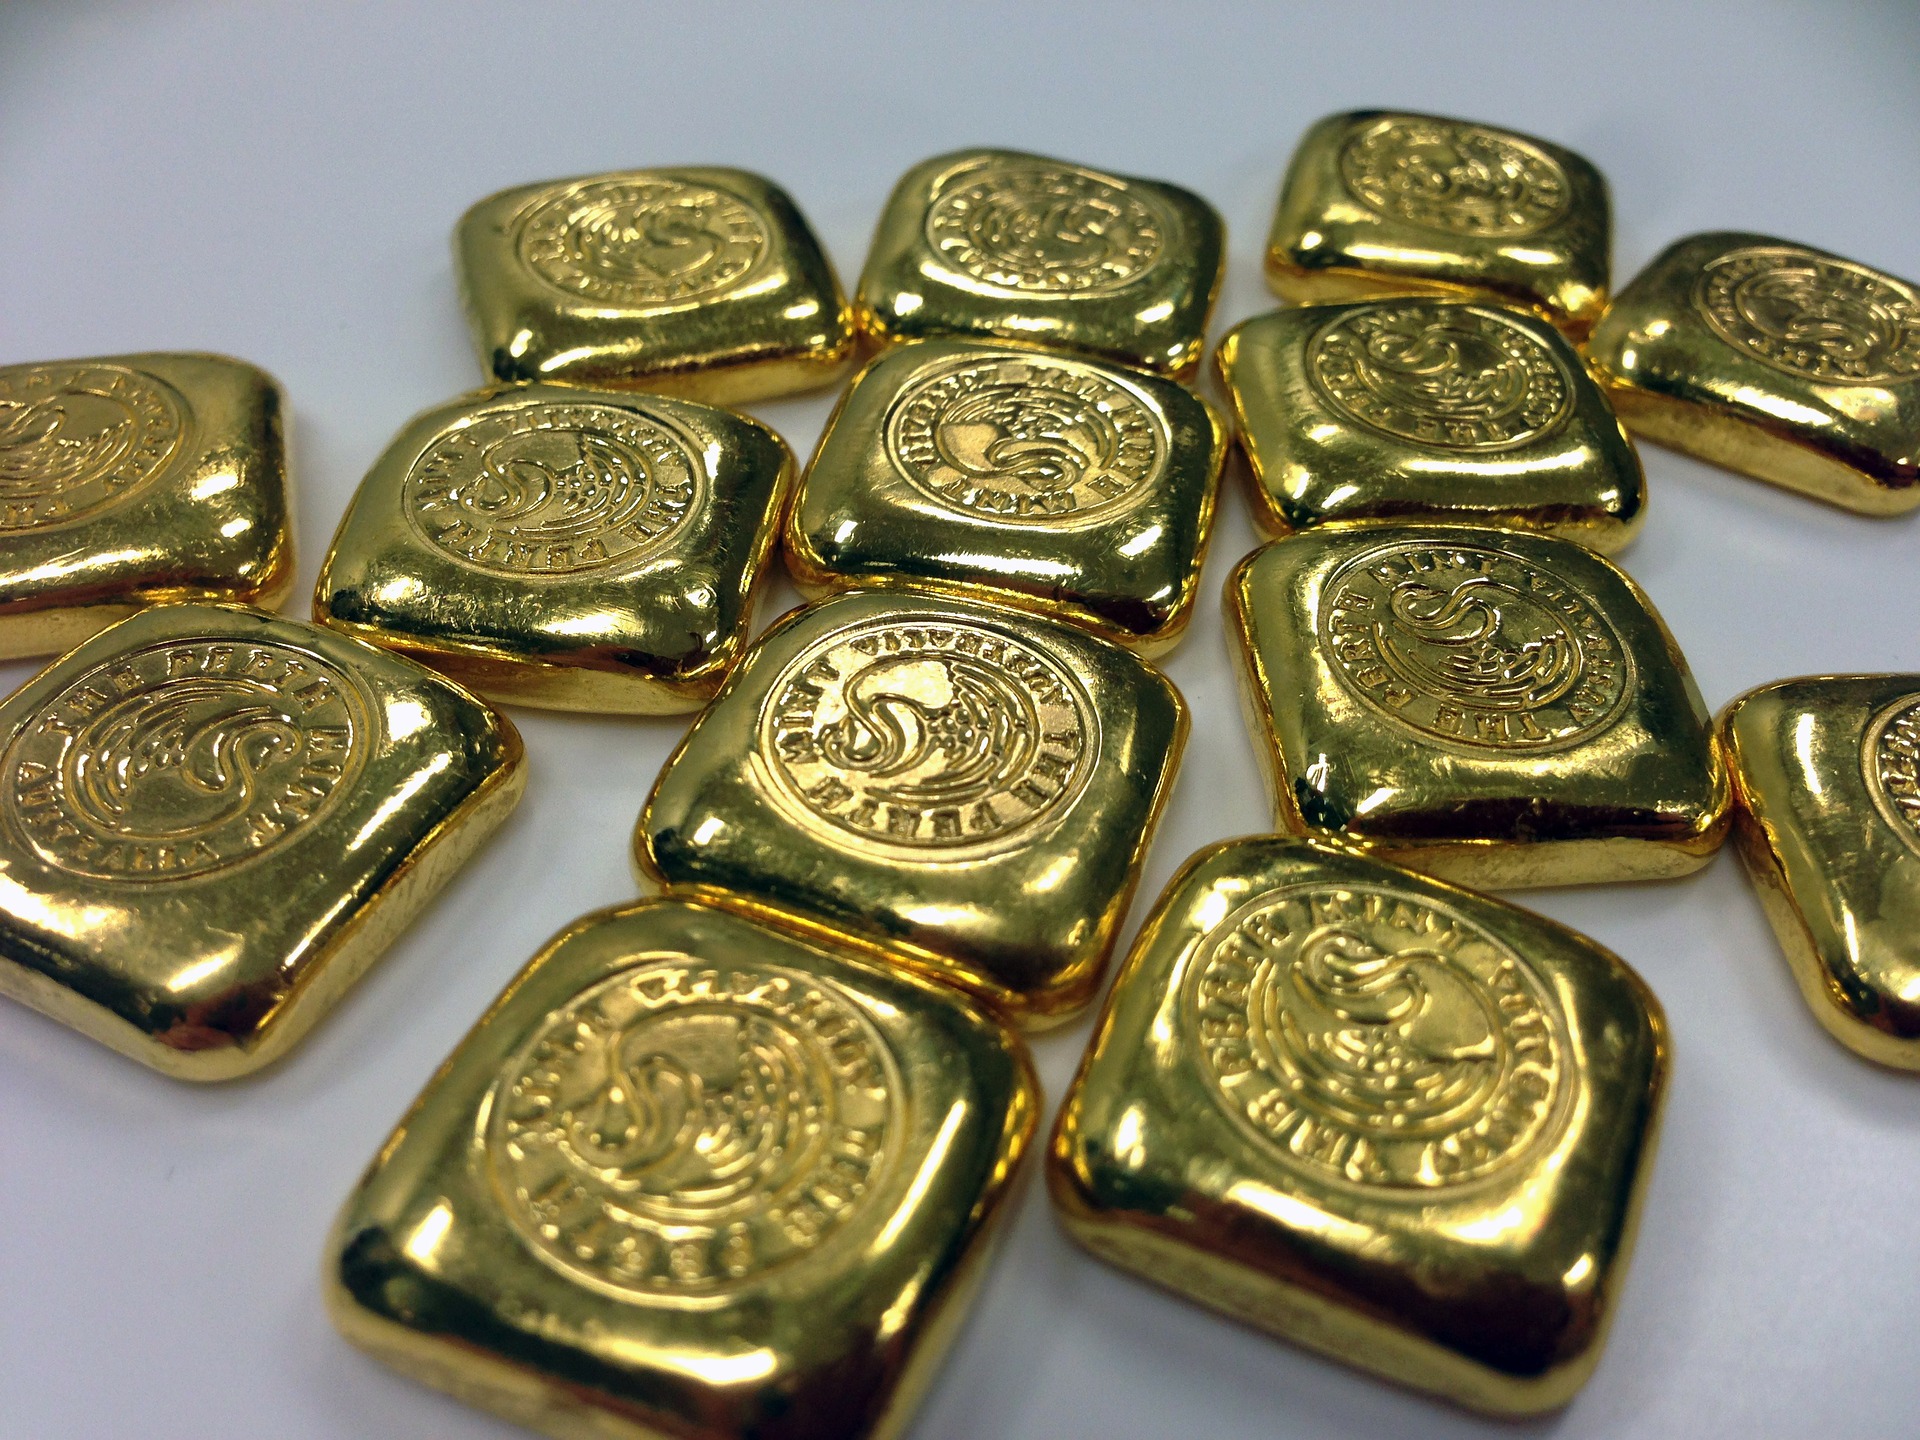 Банк Англии может повлиять на стоимость золота